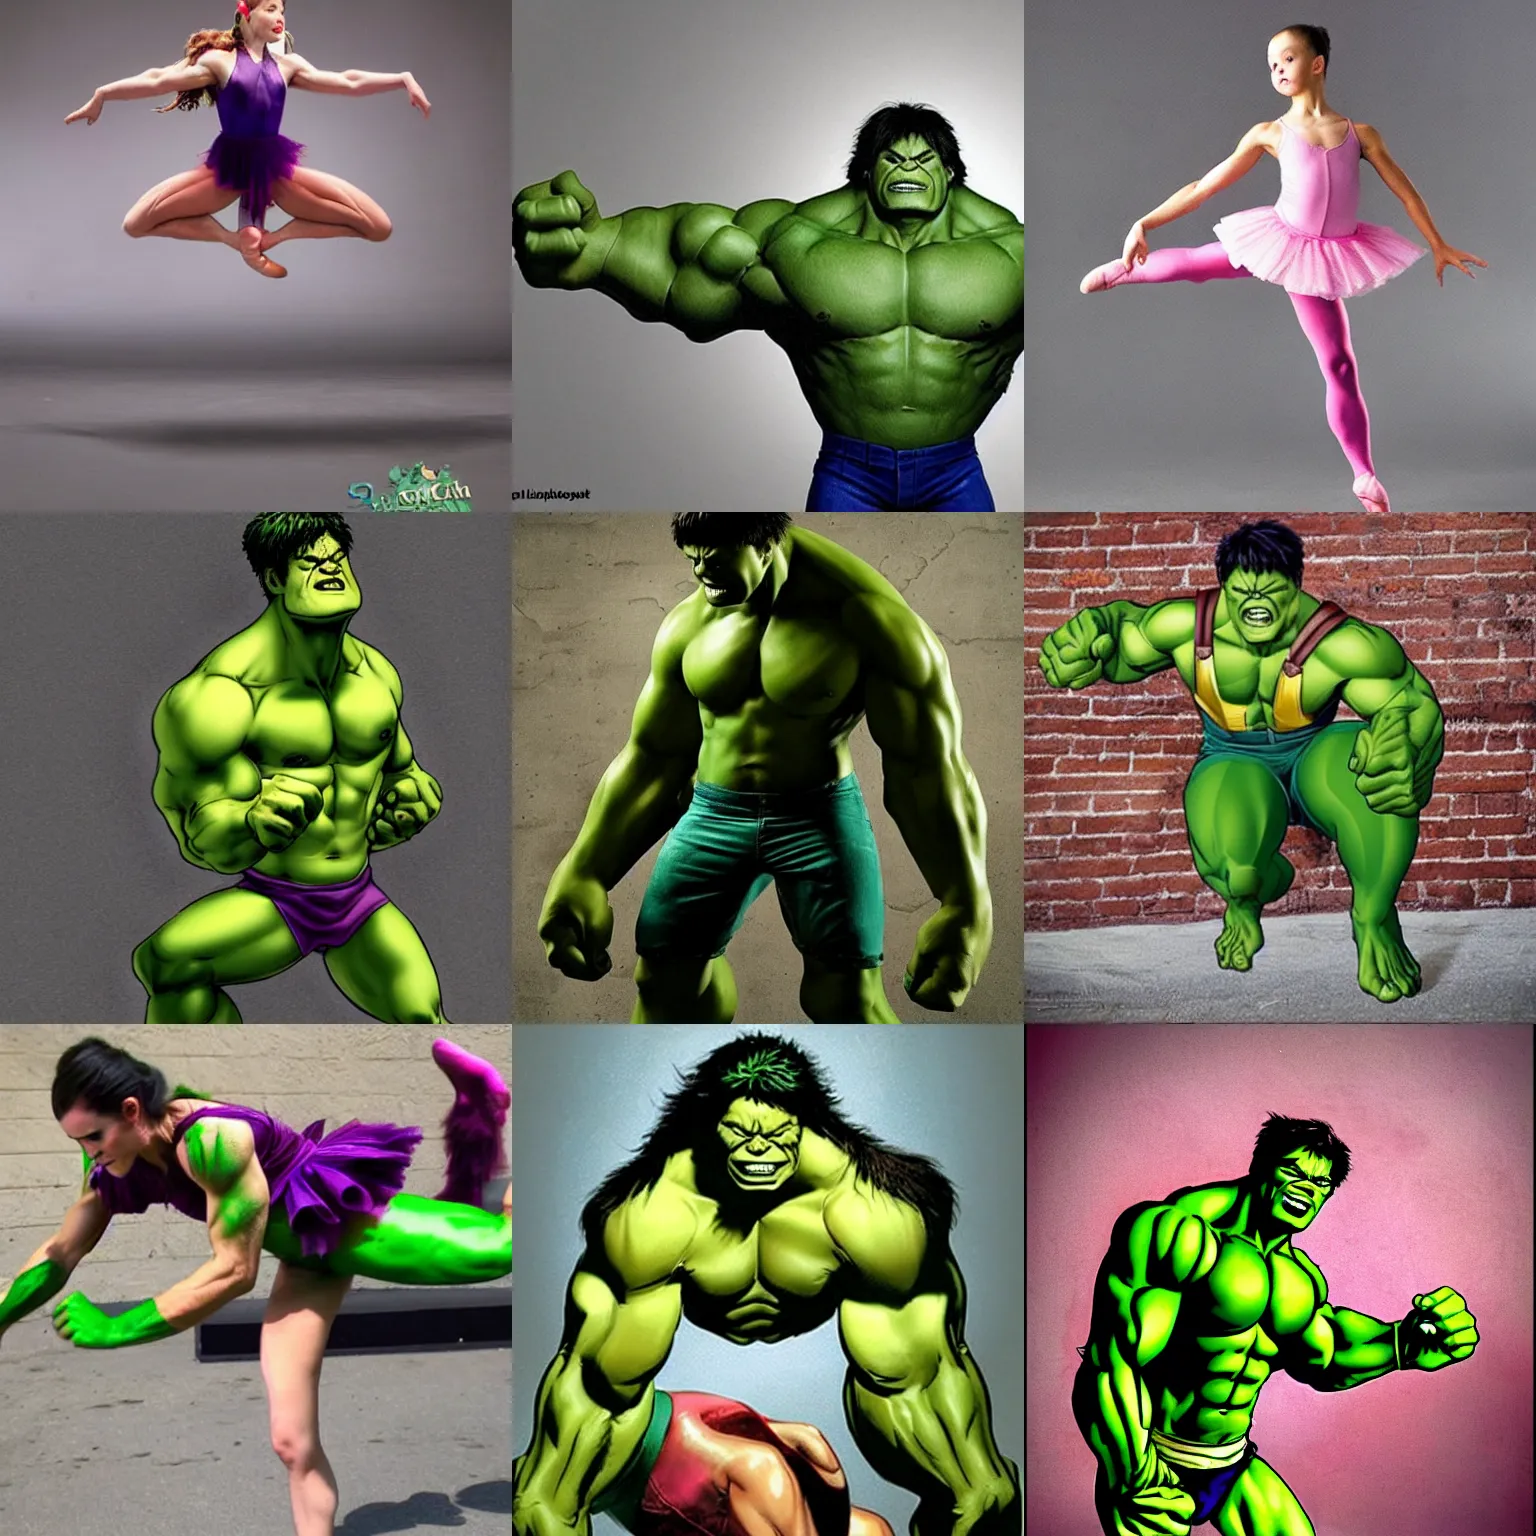 Prompt: Hulk ballerina